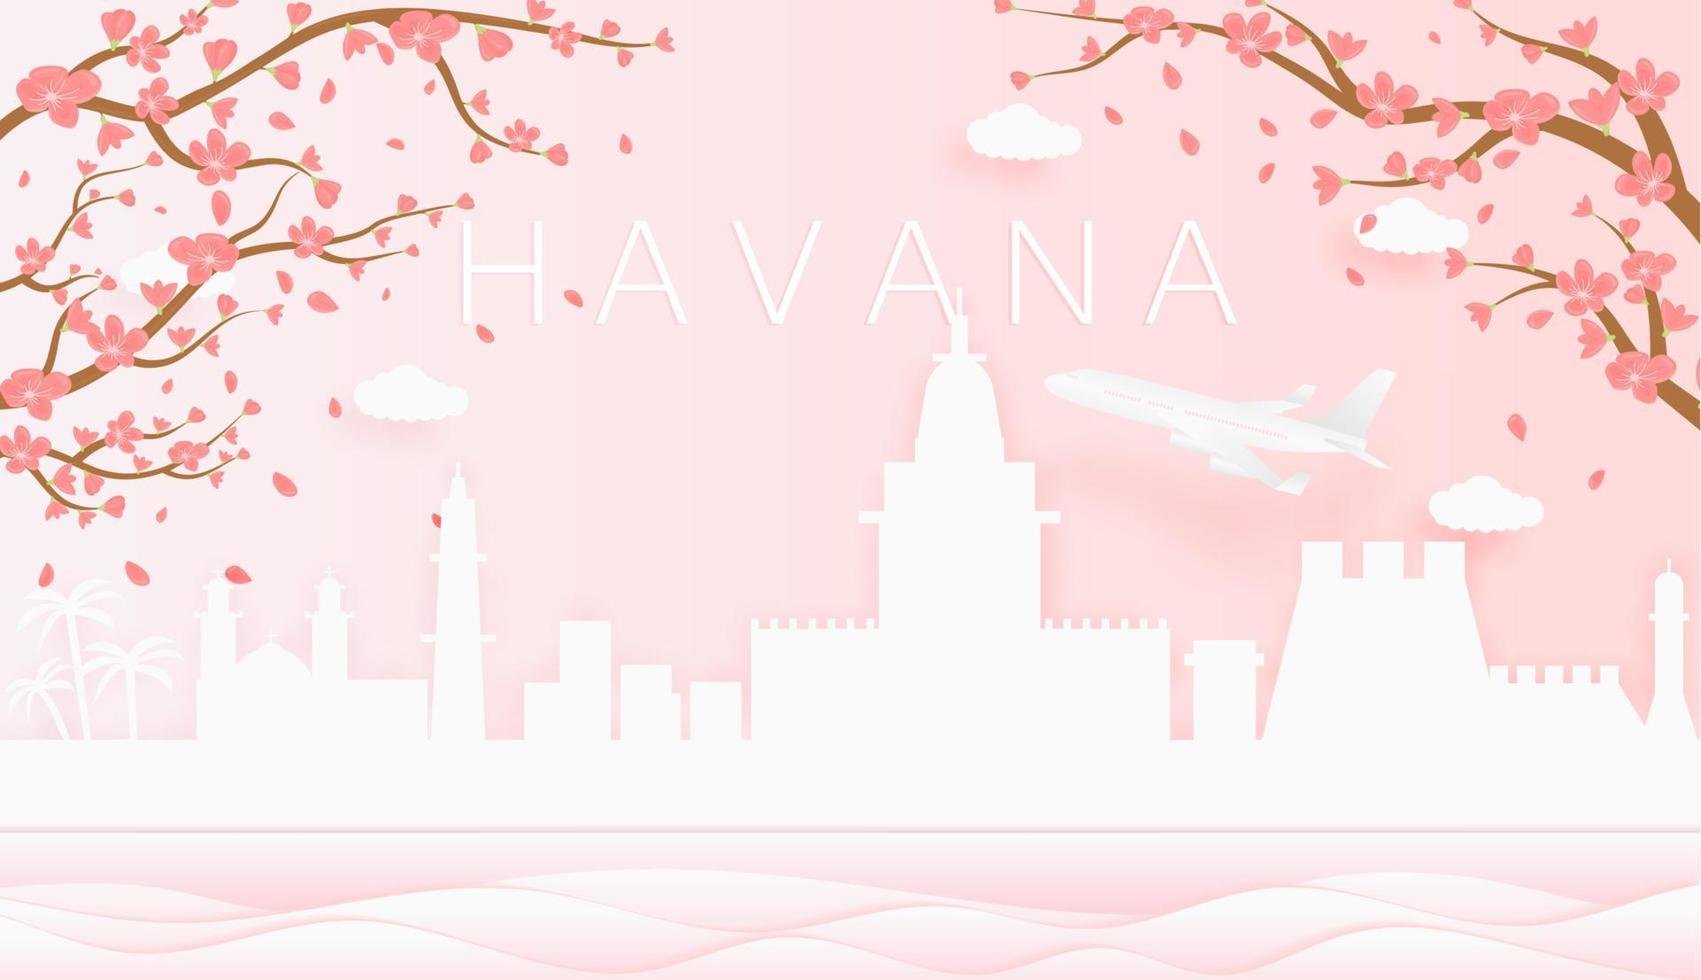 panorama viaje tarjeta postal, póster, excursión publicidad de mundo famoso puntos de referencia de la Habana, primavera temporada con floreciente flores en árbol vector